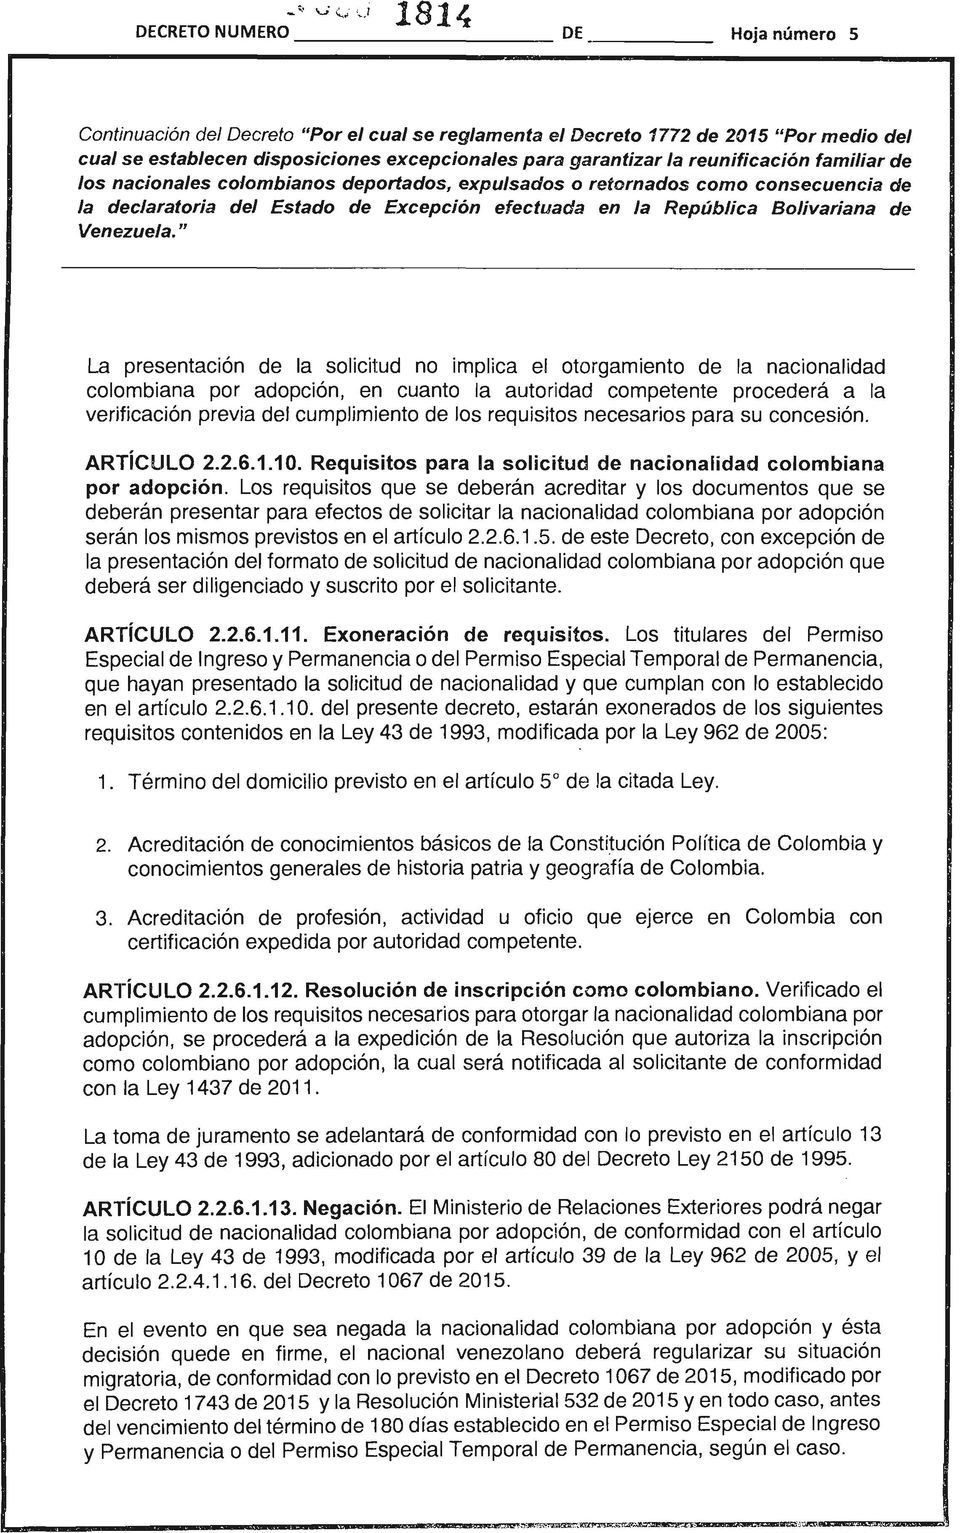 requisitos necesarios para su concesión. ARTíCULO 2.2.6.1.10. Requisitos para la solicitud de nacionalidad colombiana por adopción.